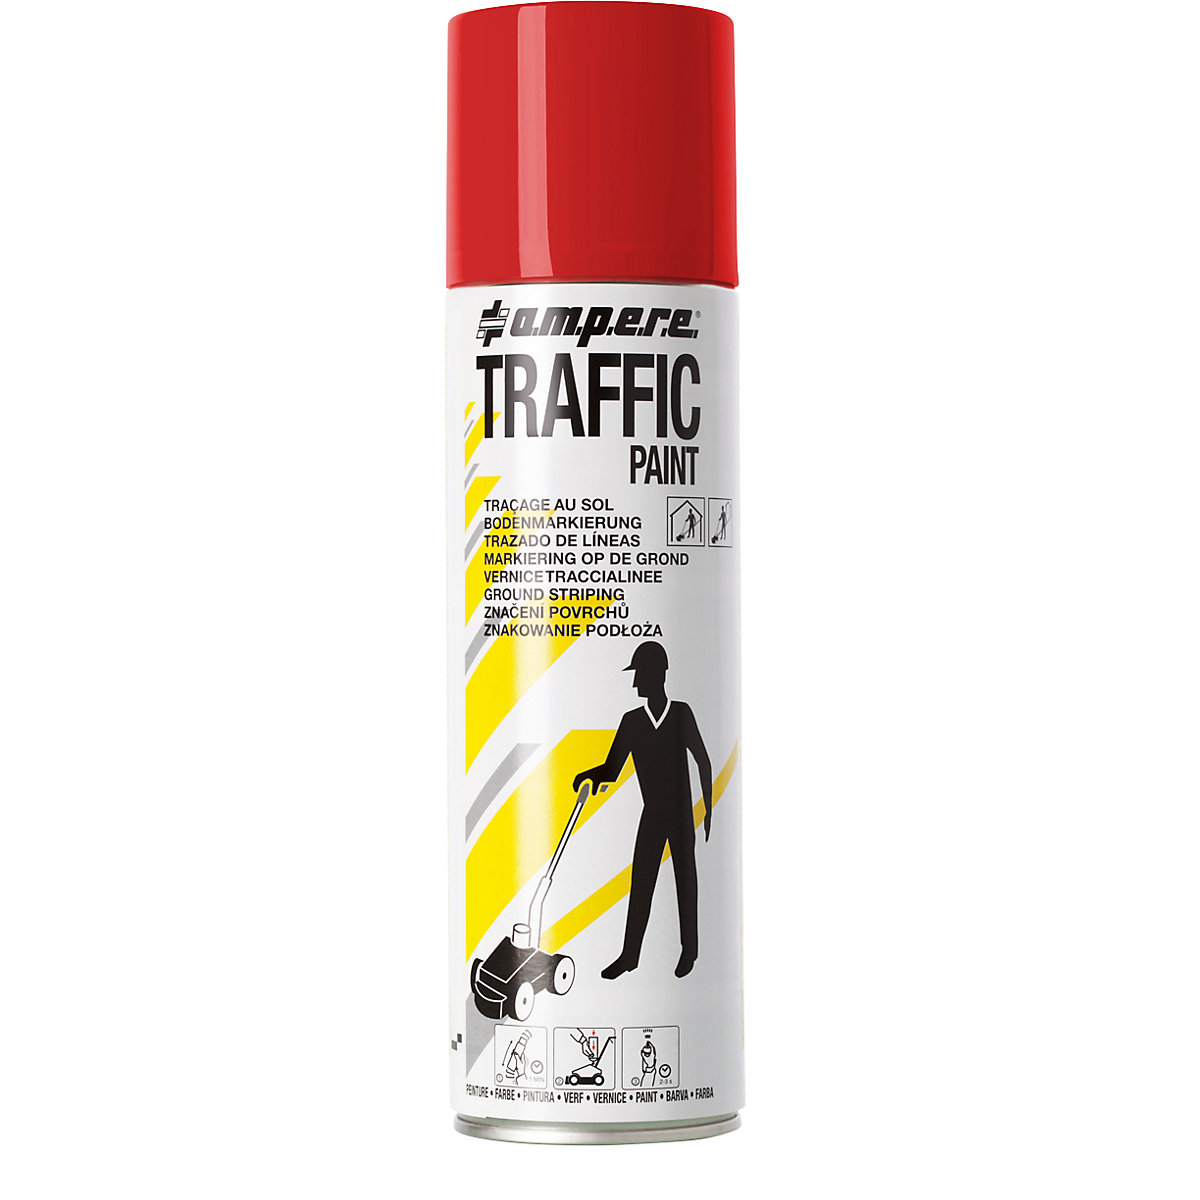 Peinture de marquage Traffic Paint® – Ampere, contenu 500 ml, lot de 12 aérosols, rouge-5